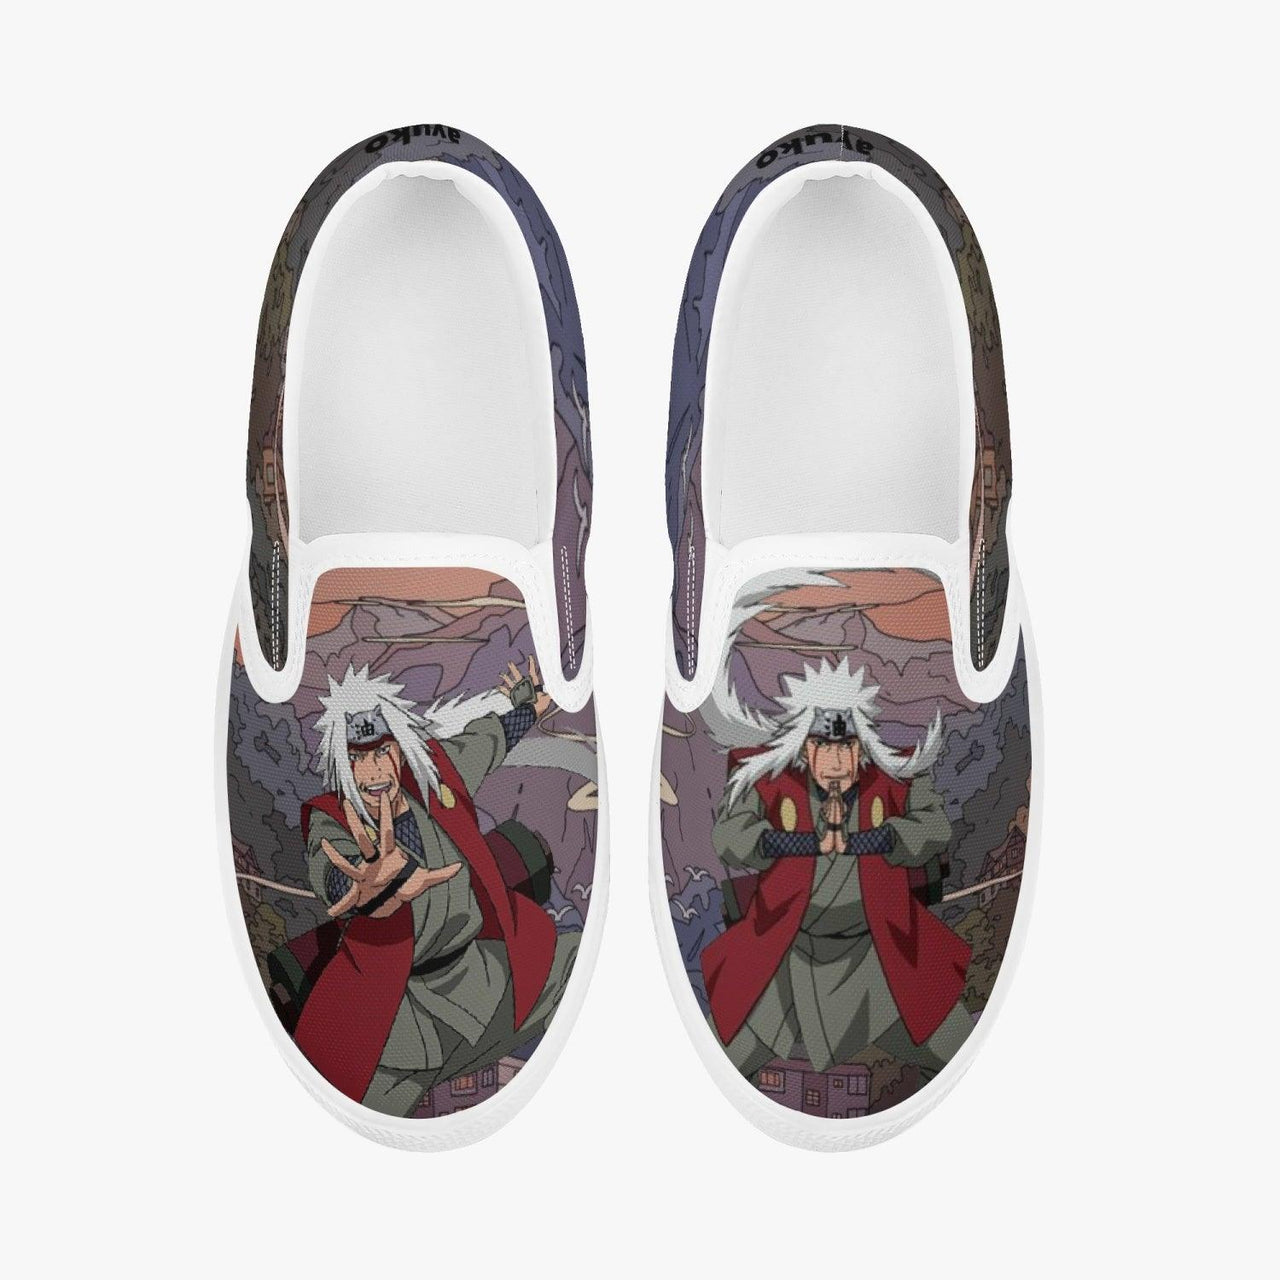 Naruto Shippuden Jiraiya Kids Slipons Anime Shoes _ Naruto _ Ayuko